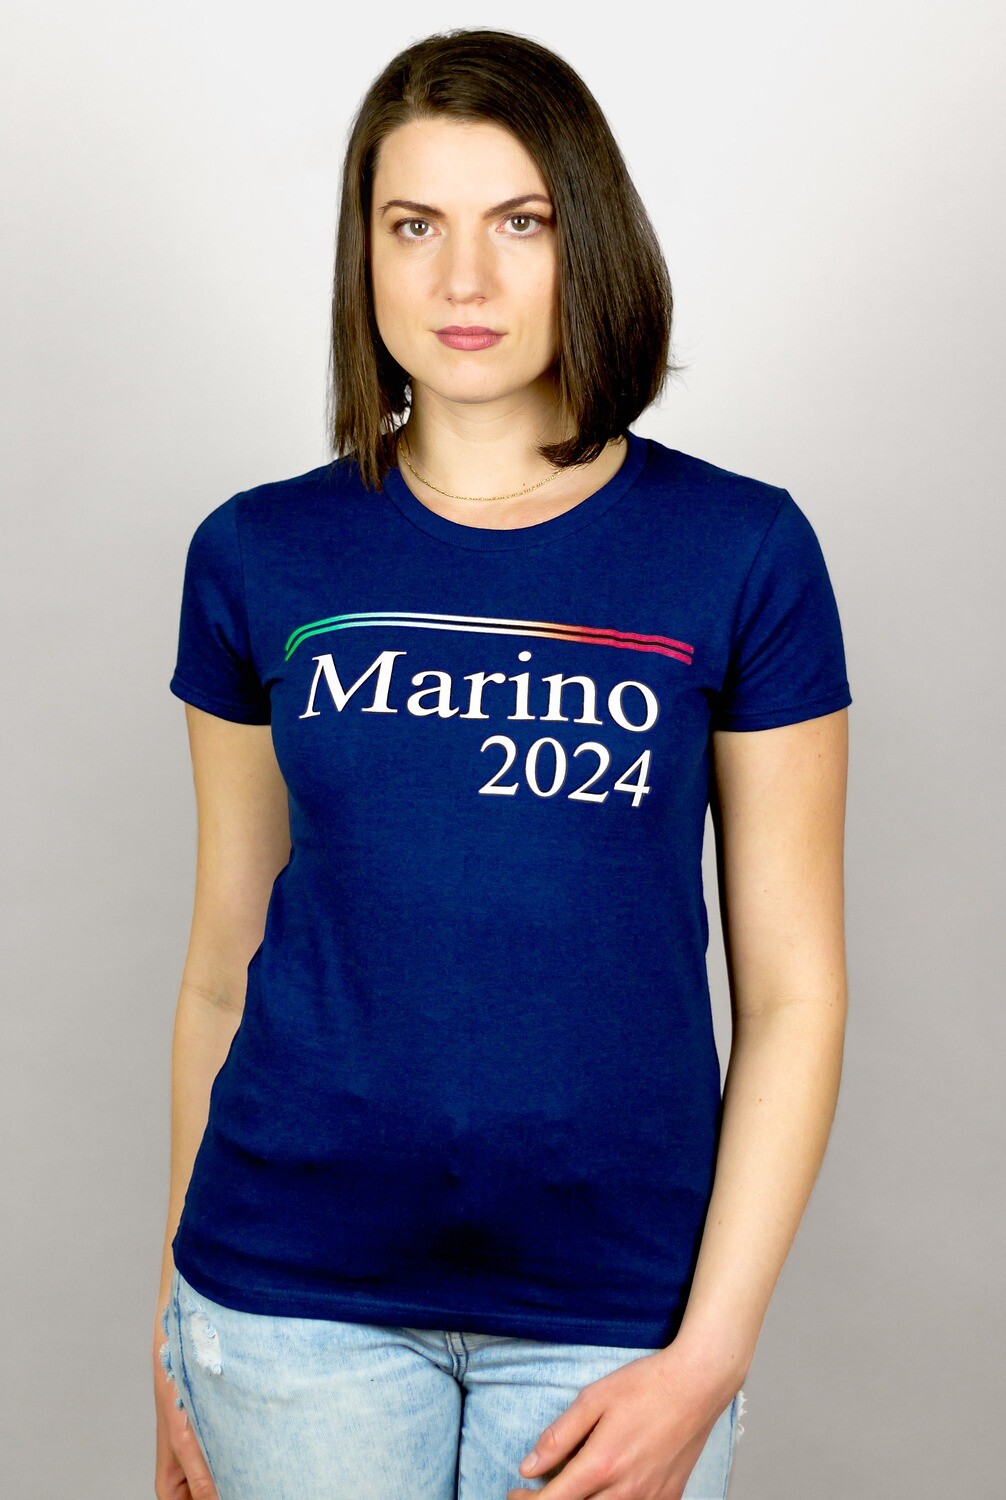 Marino 2024 - Women's T-Shirt